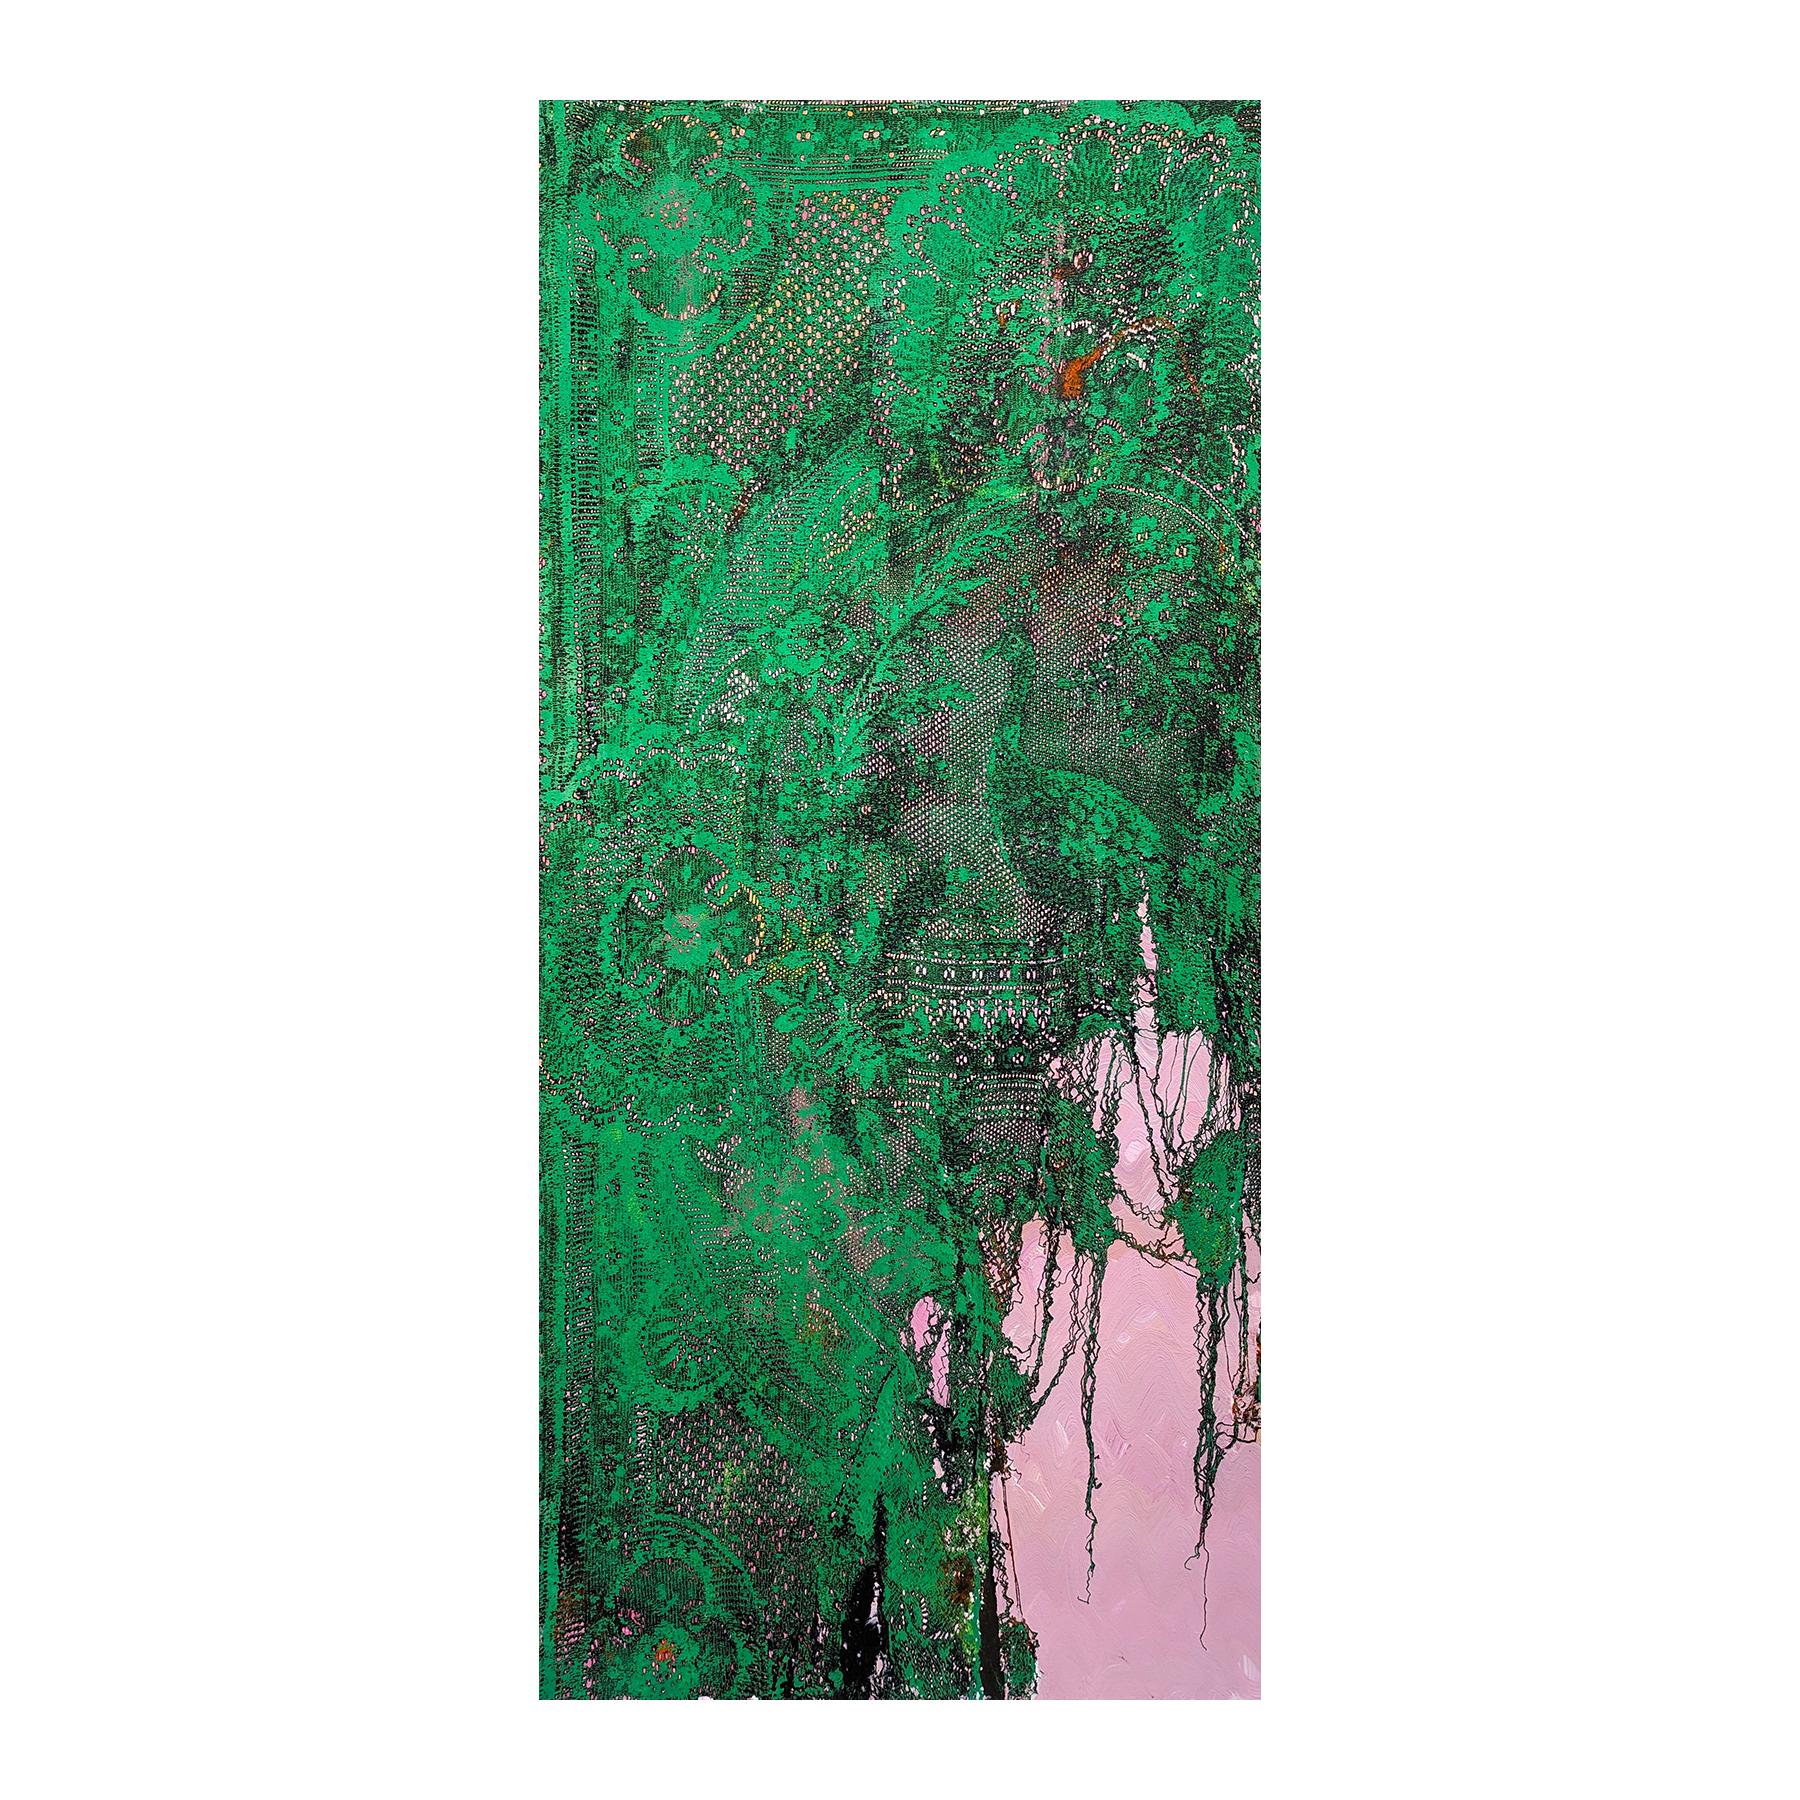 Peintures contemporaines en dentelle abstraite verte et rose, paon vert - Painting de Mark Flood